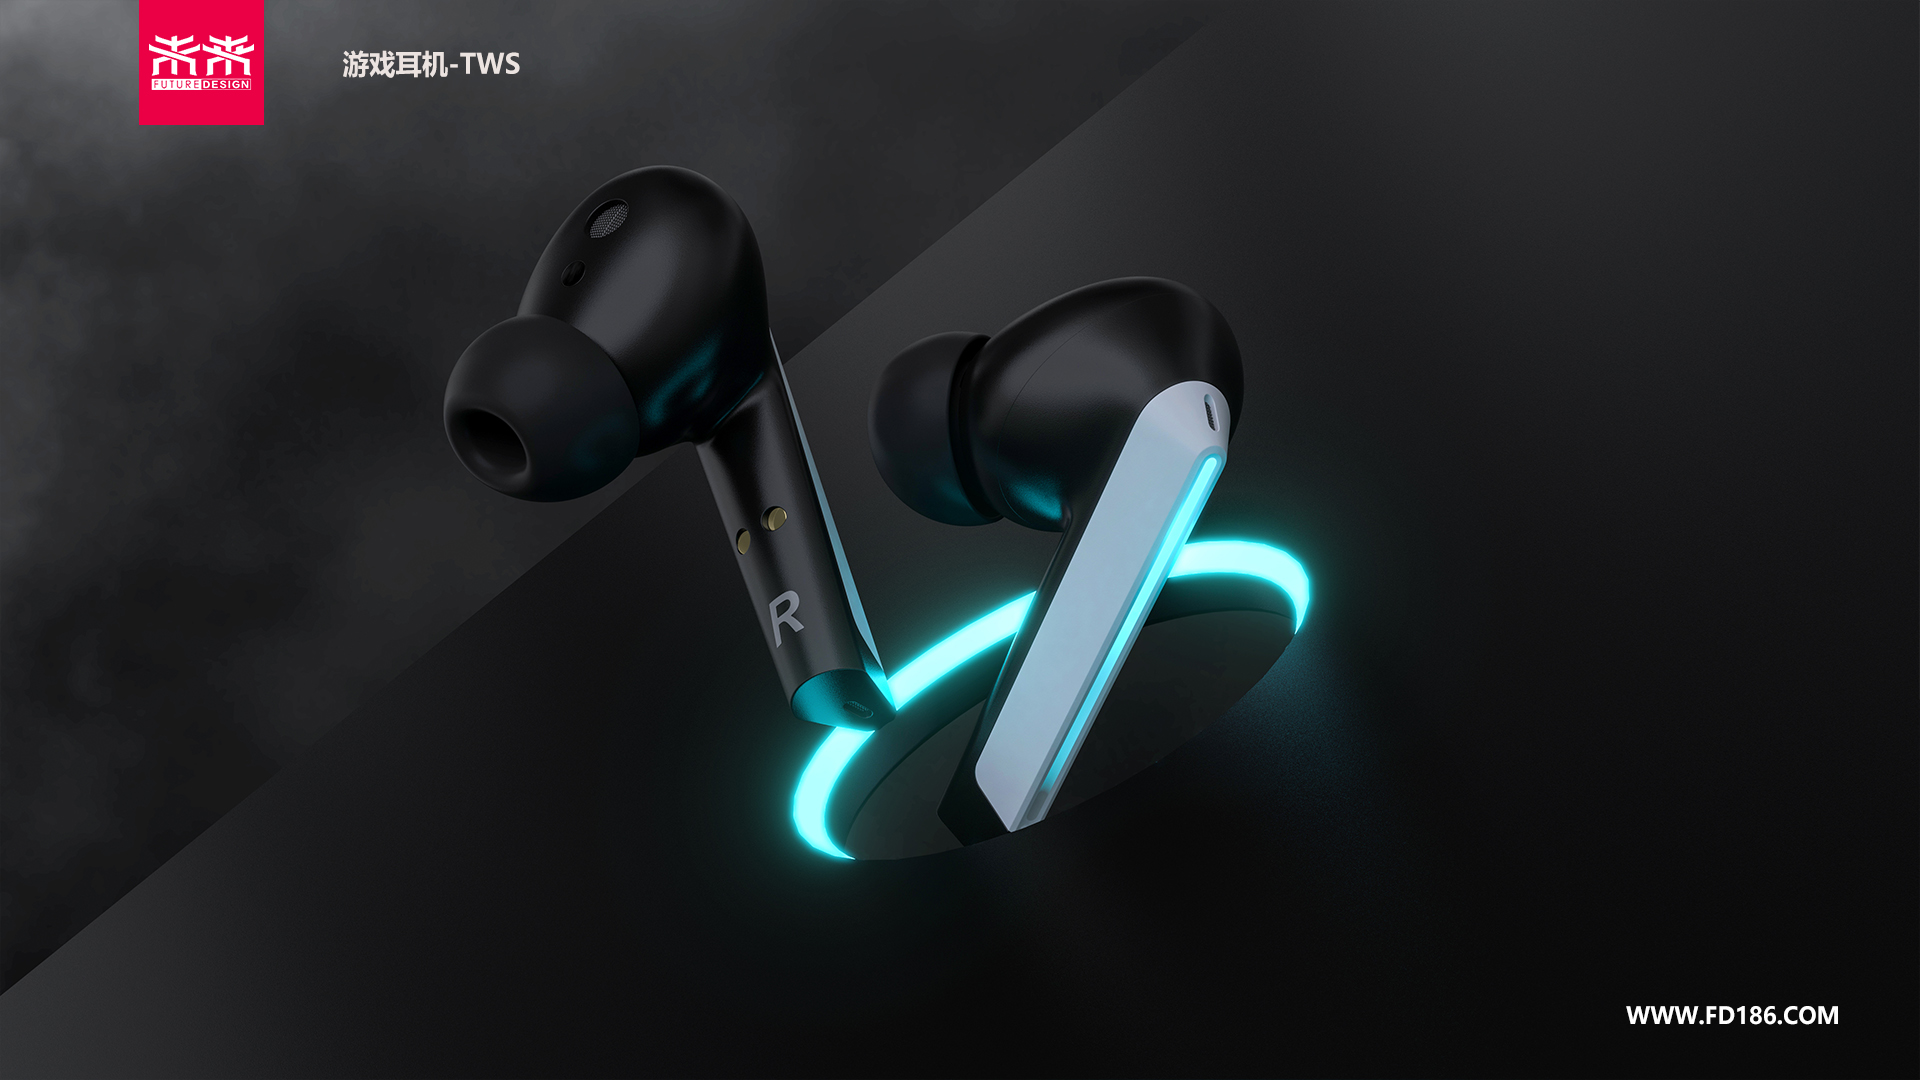 深圳工业设计公司蓝牙耳机设计案例-TWS游戏耳机